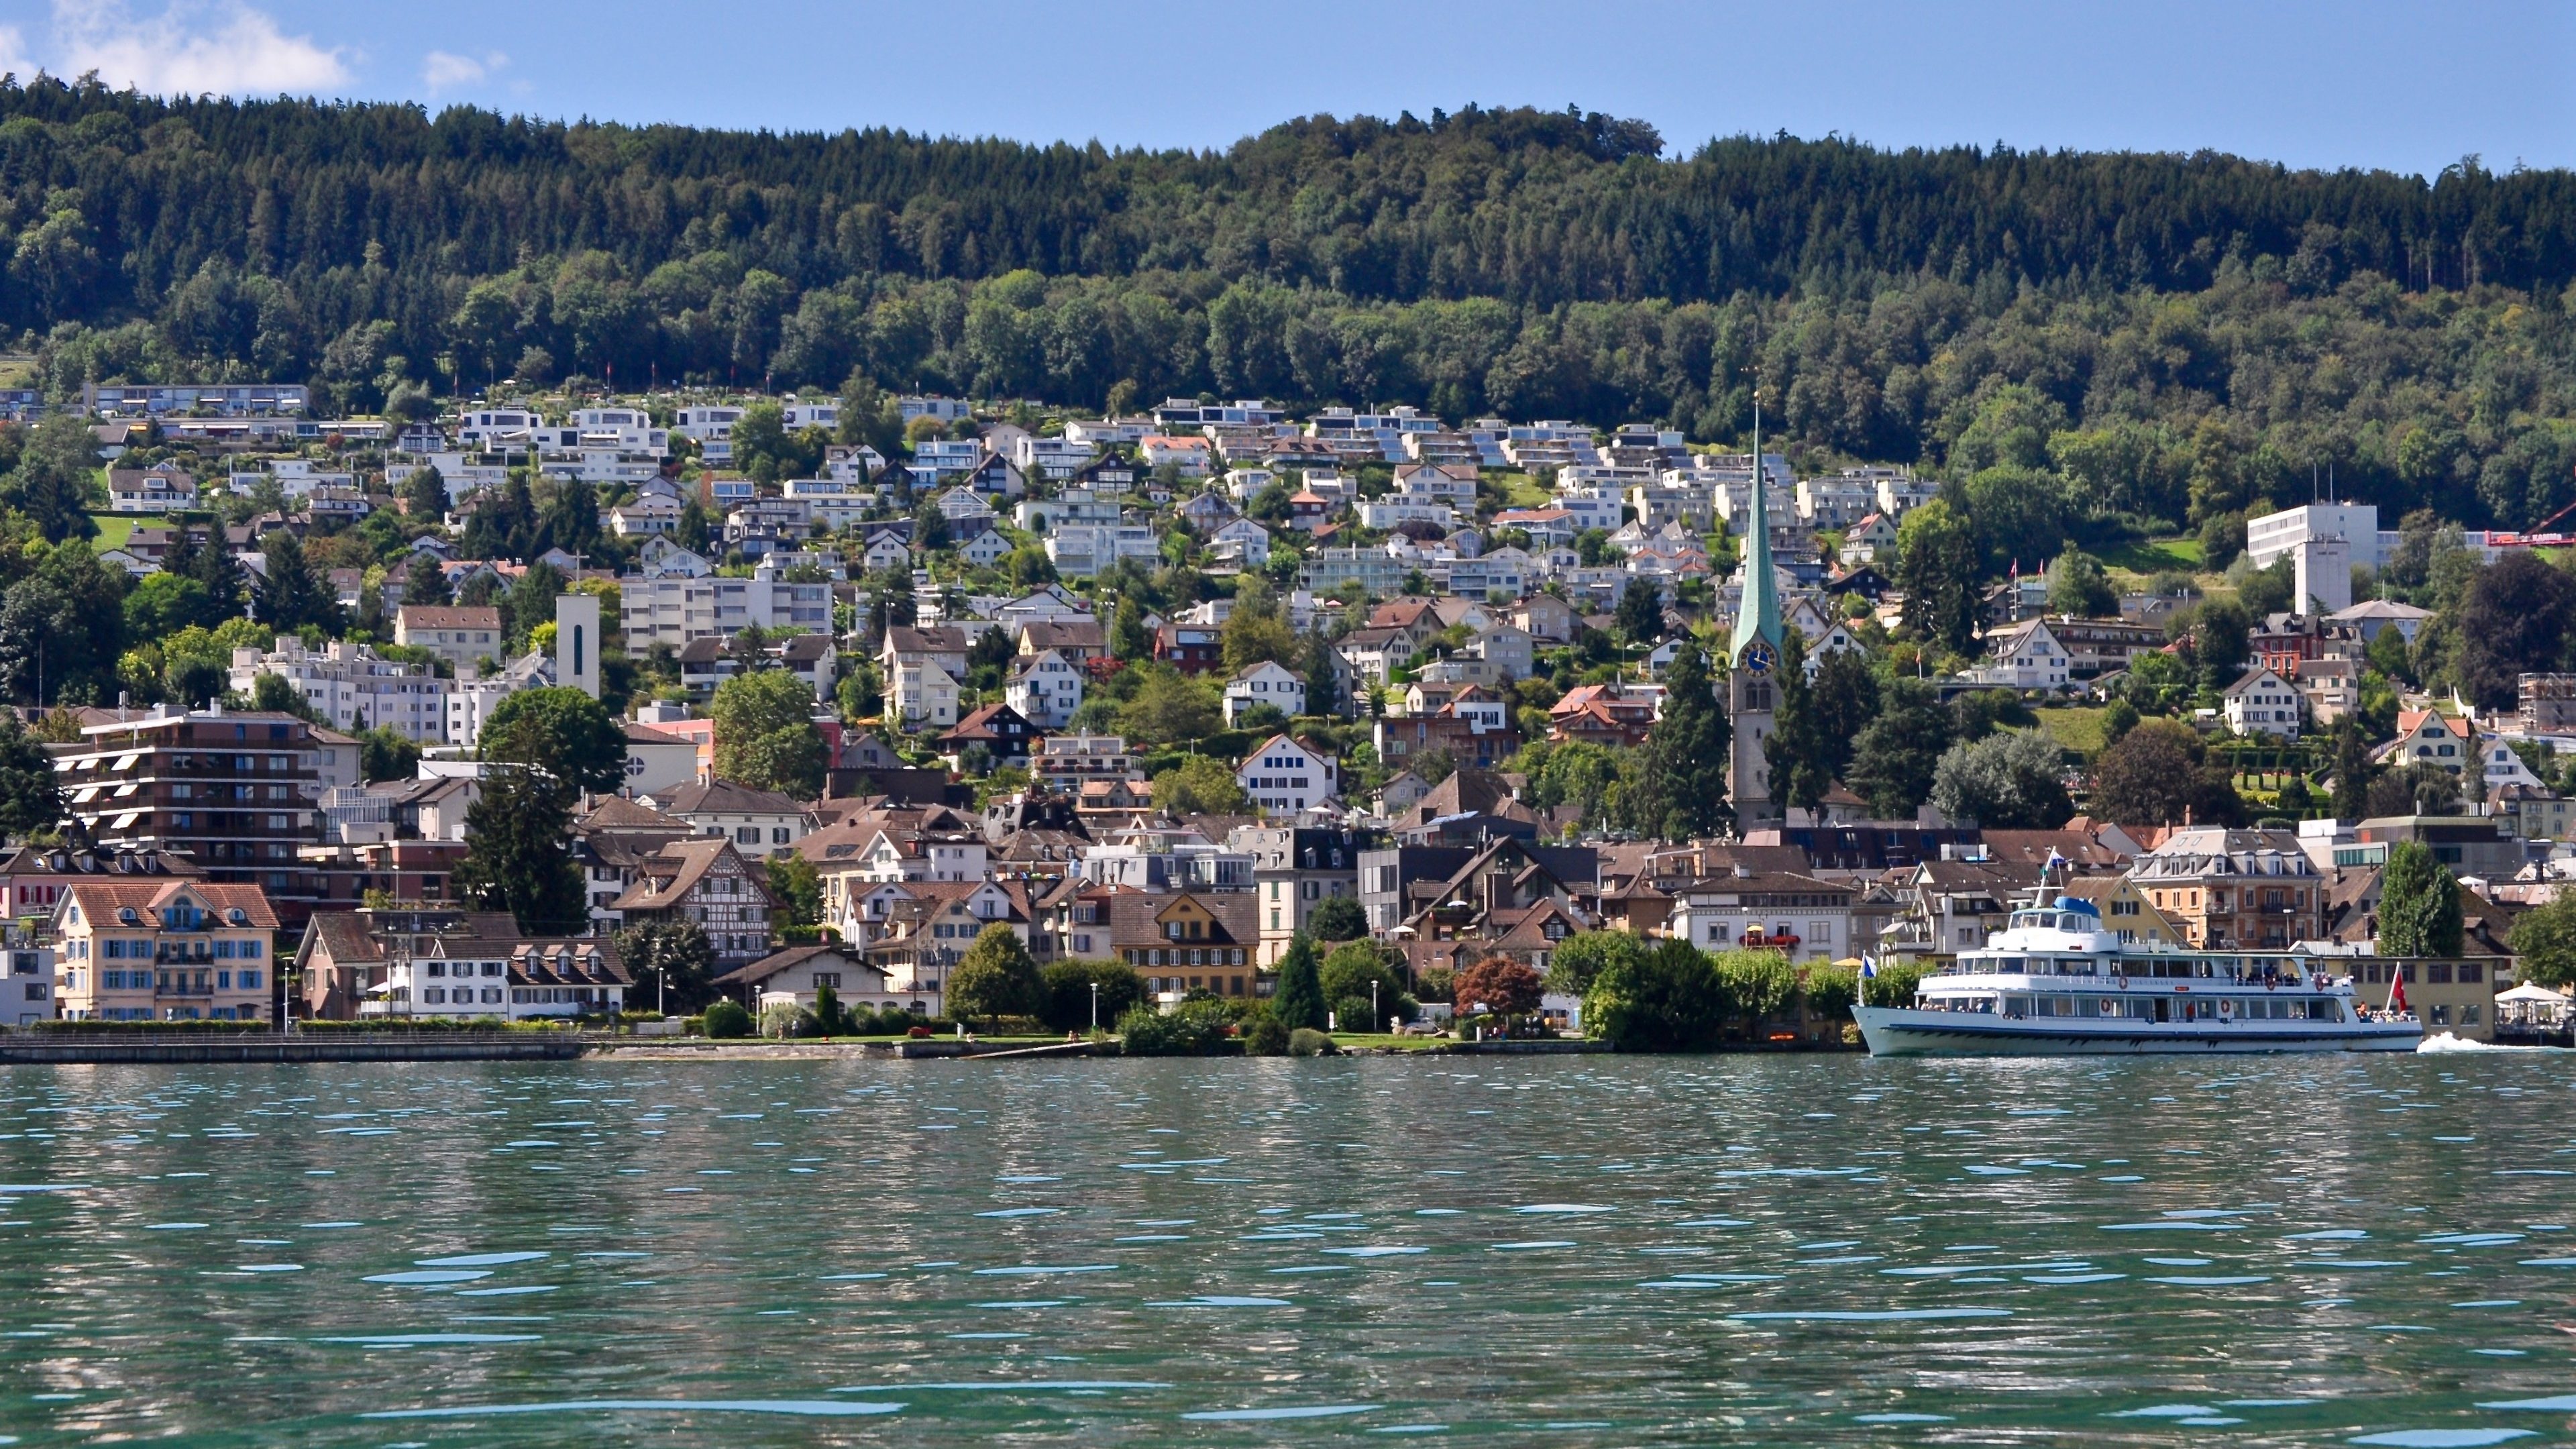 Stadt Horgen am Zürichsee, Kanton Zürich, Schweiz, mit Passagierschiff im Vordergrund, 